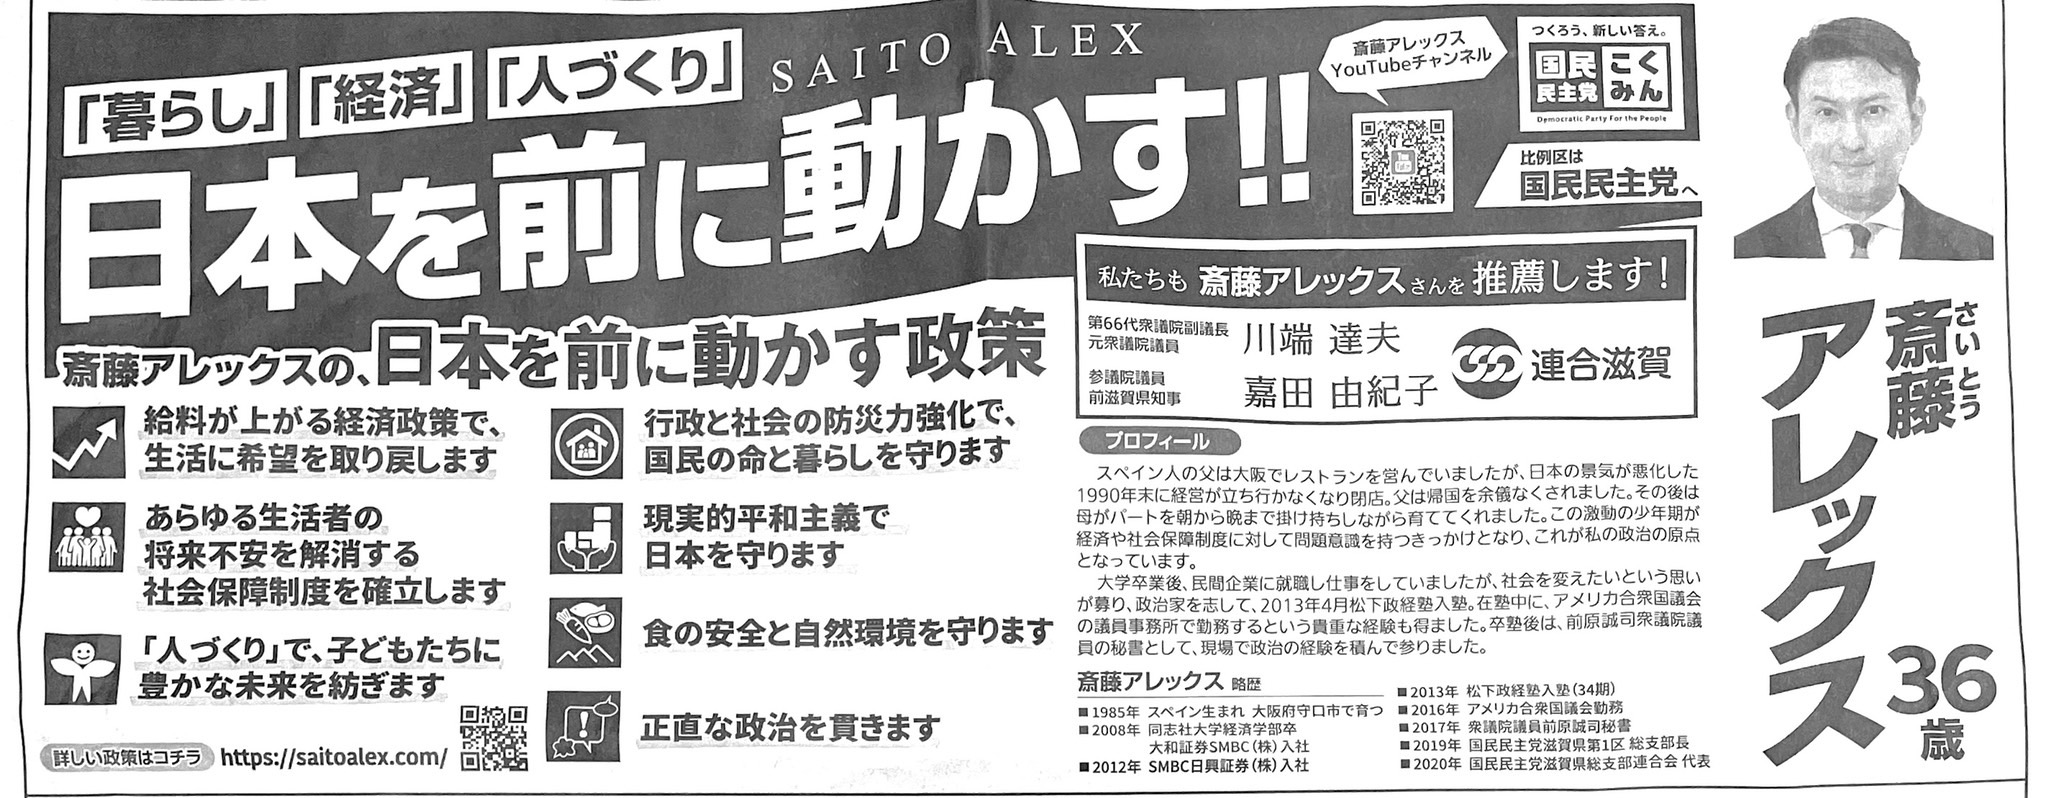 斎藤アレックス　選挙公報　滋賀1区　「暮らし」「経済」「人づくり」日本を前に動かす